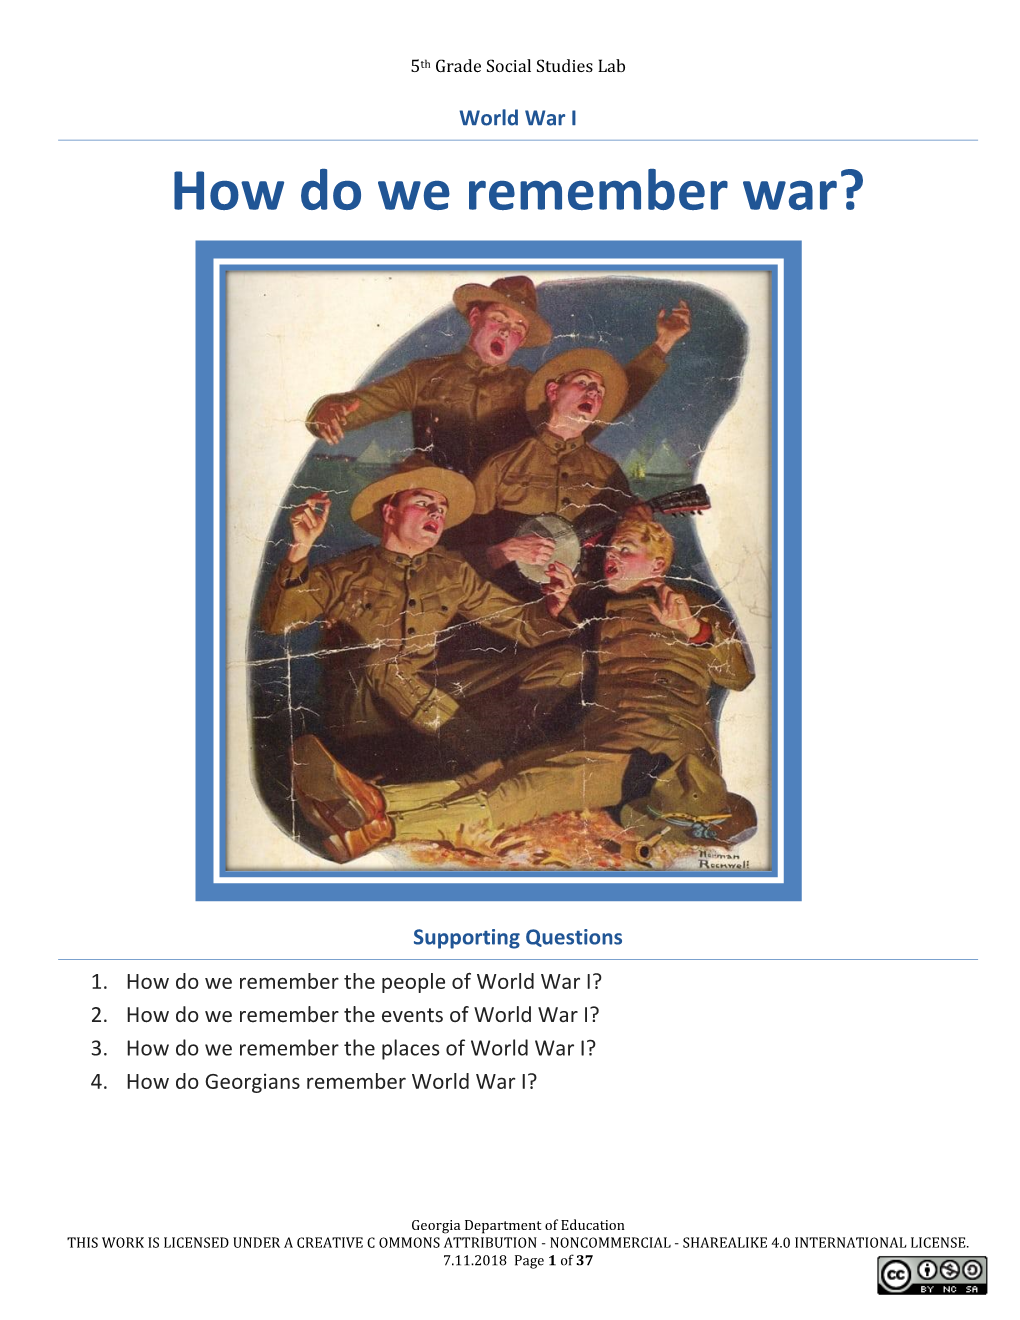 World War I How Do We Remember War?